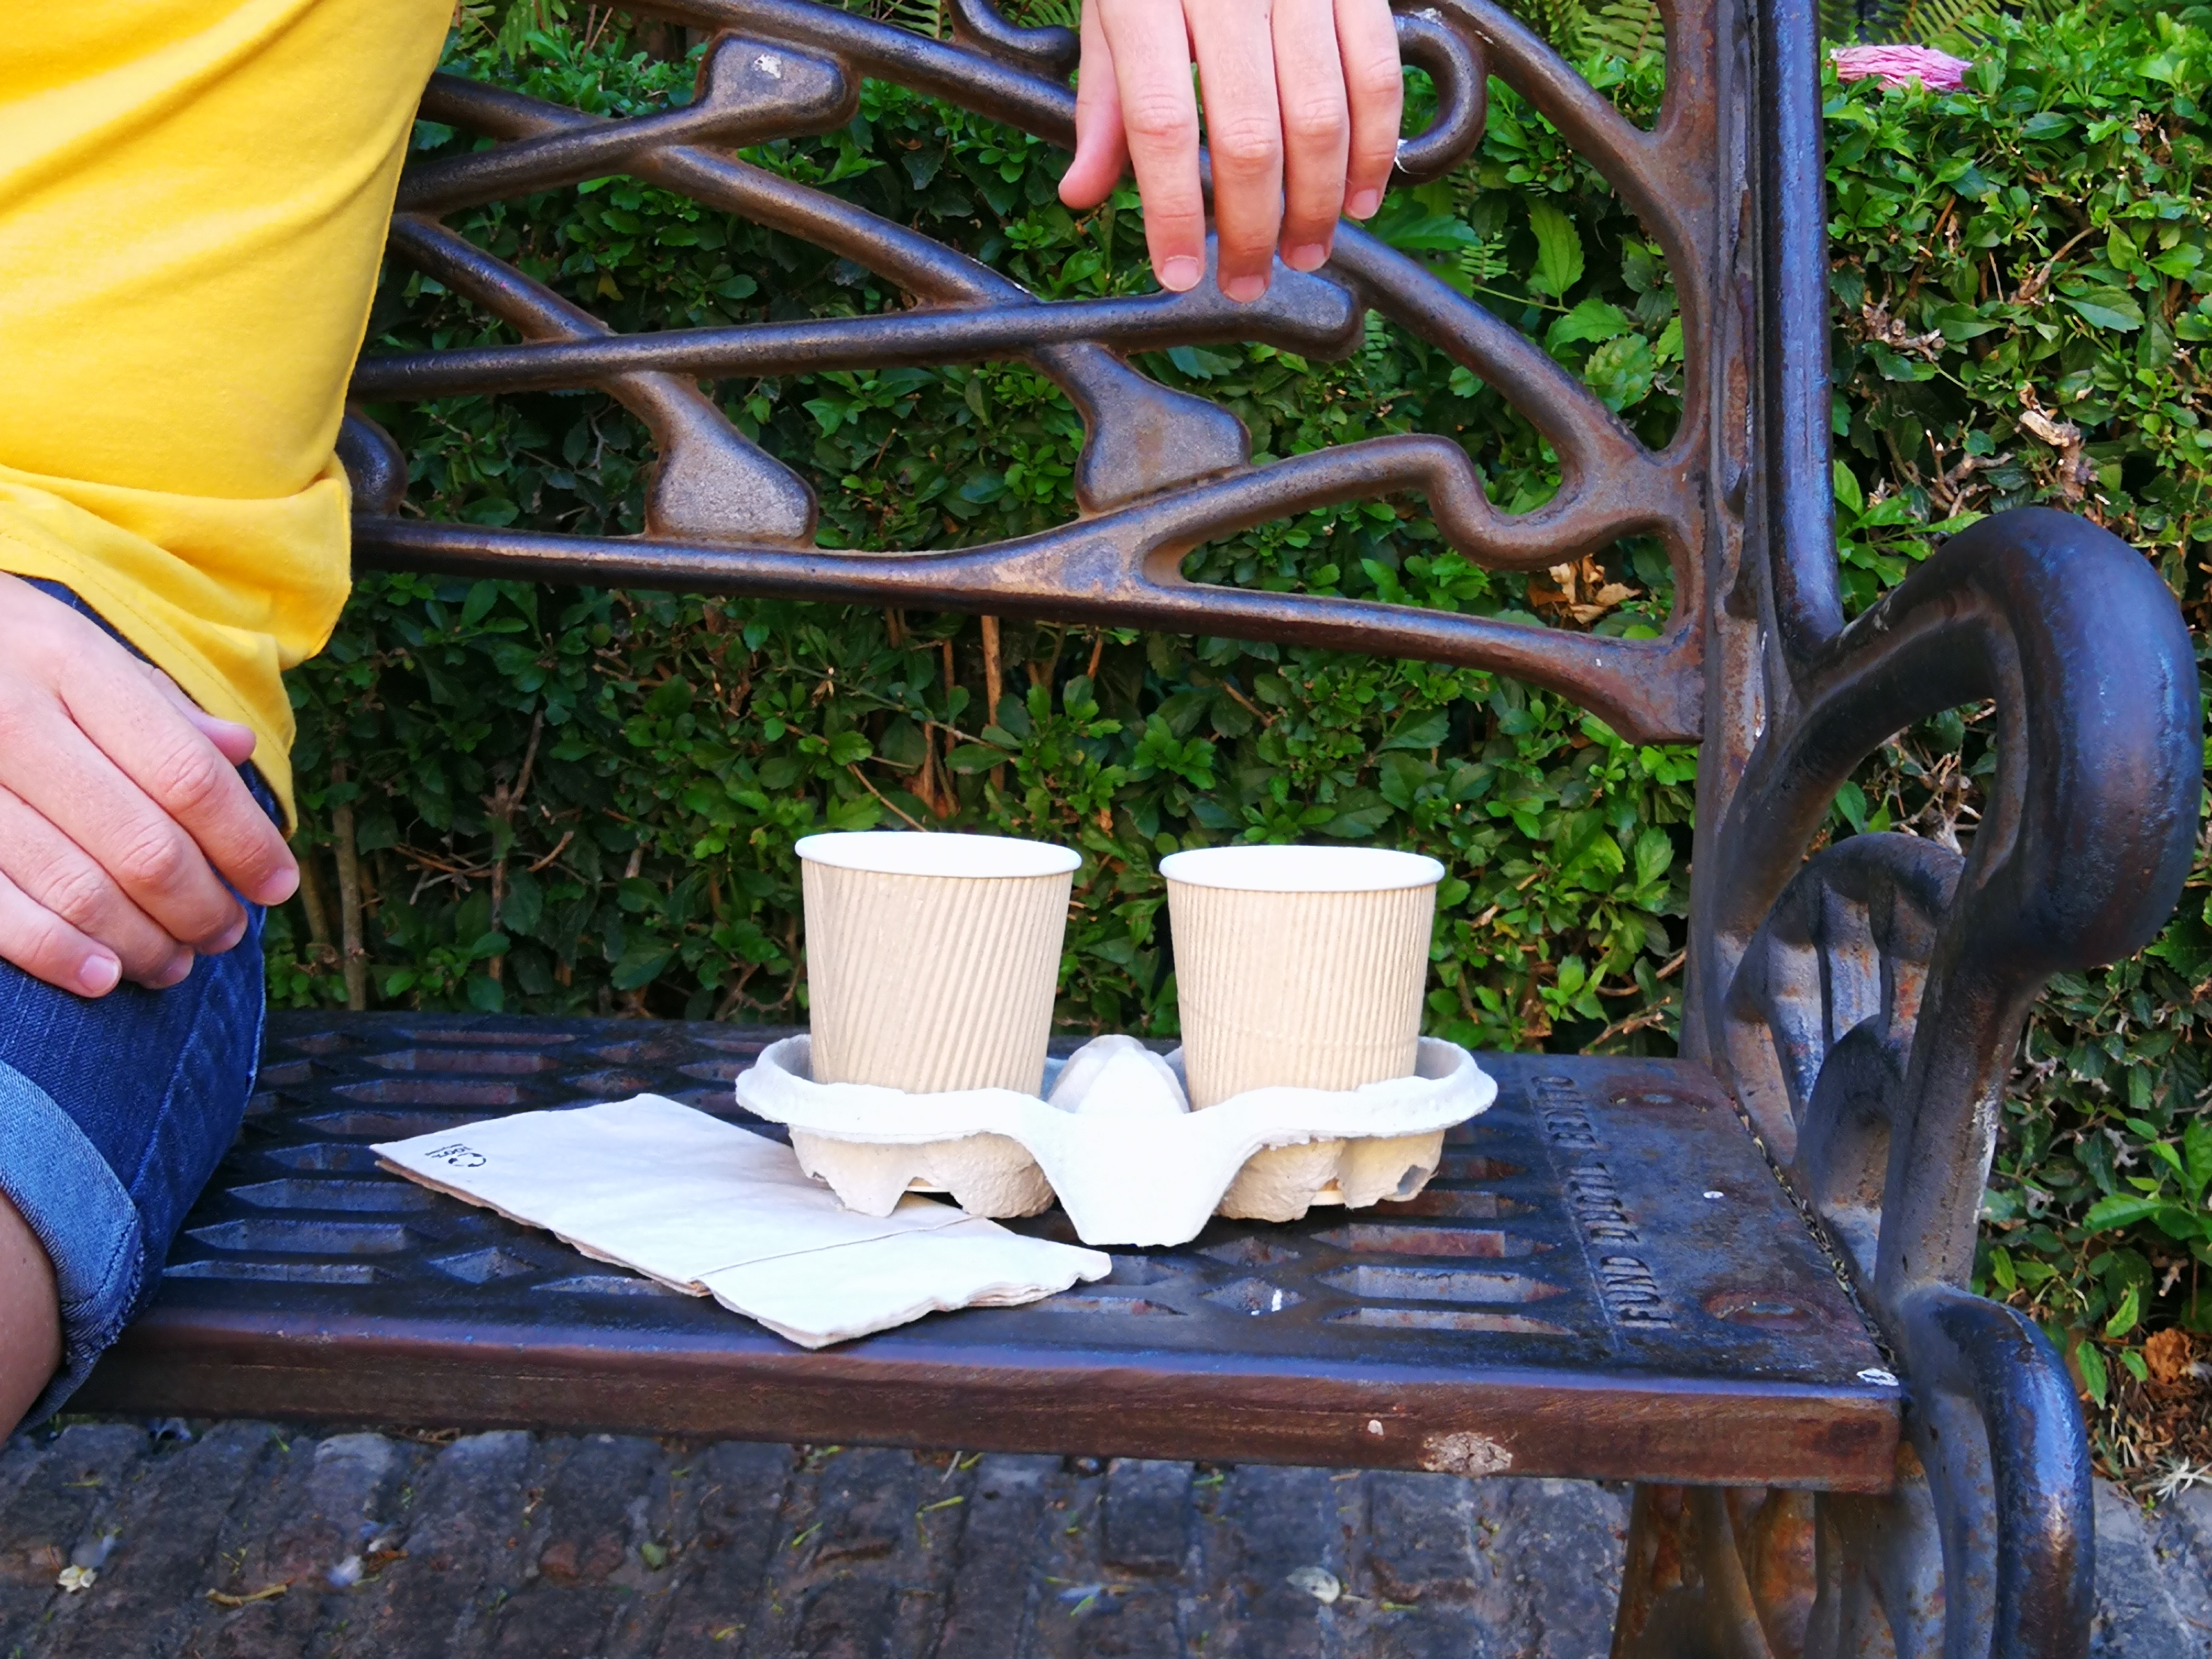 Café en taza, por favor!: el impacto ambiental de los vasos